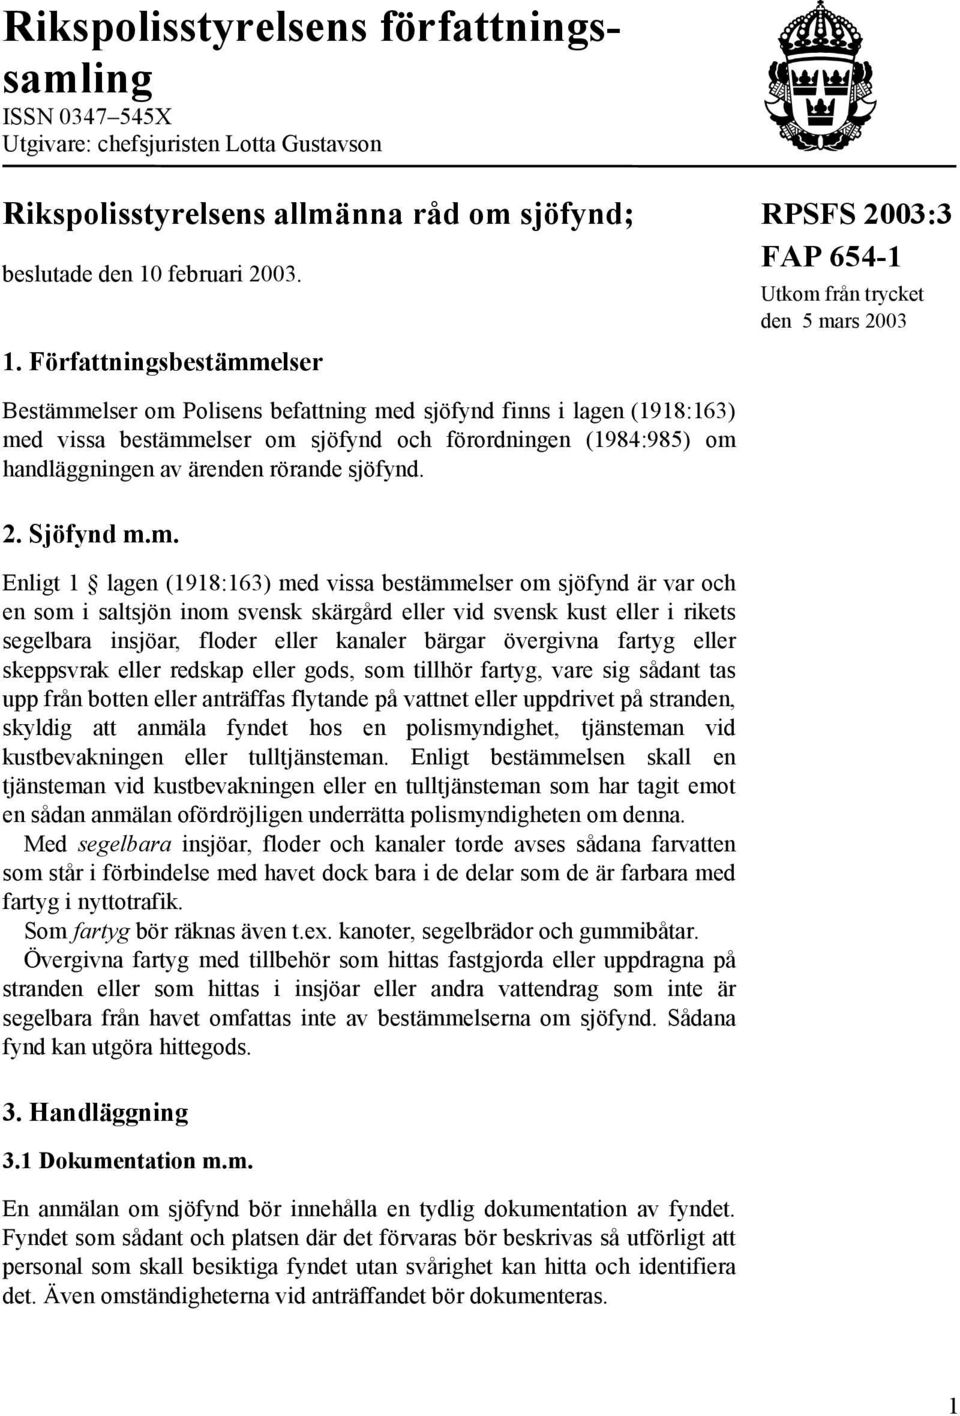 Författningsbestämmelser FAP 654-1 Utkom från trycket den 5 mars 2003 Bestämmelser om Polisens befattning med sjöfynd finns i lagen (1918:163) med vissa bestämmelser om sjöfynd och förordningen